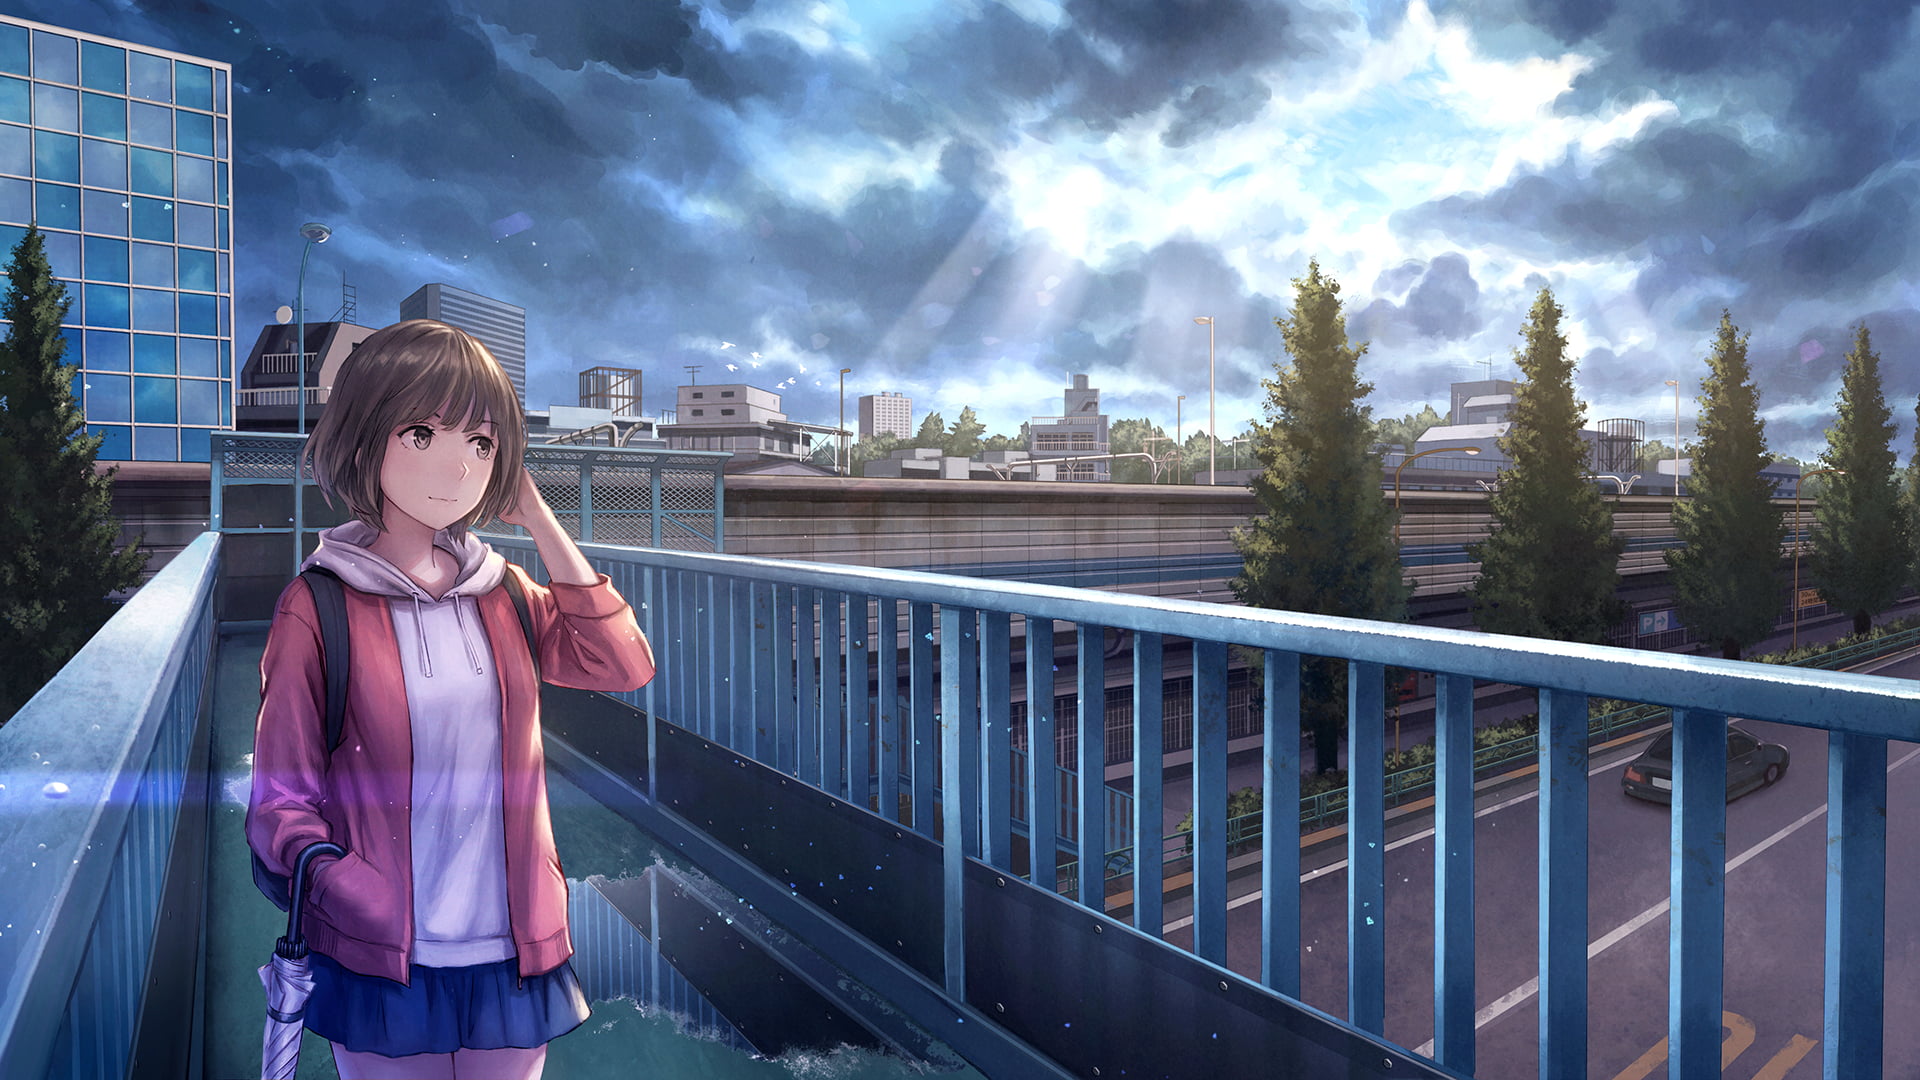 Anime Bridge 4k Ultra HD Wallpaper by Lifeline